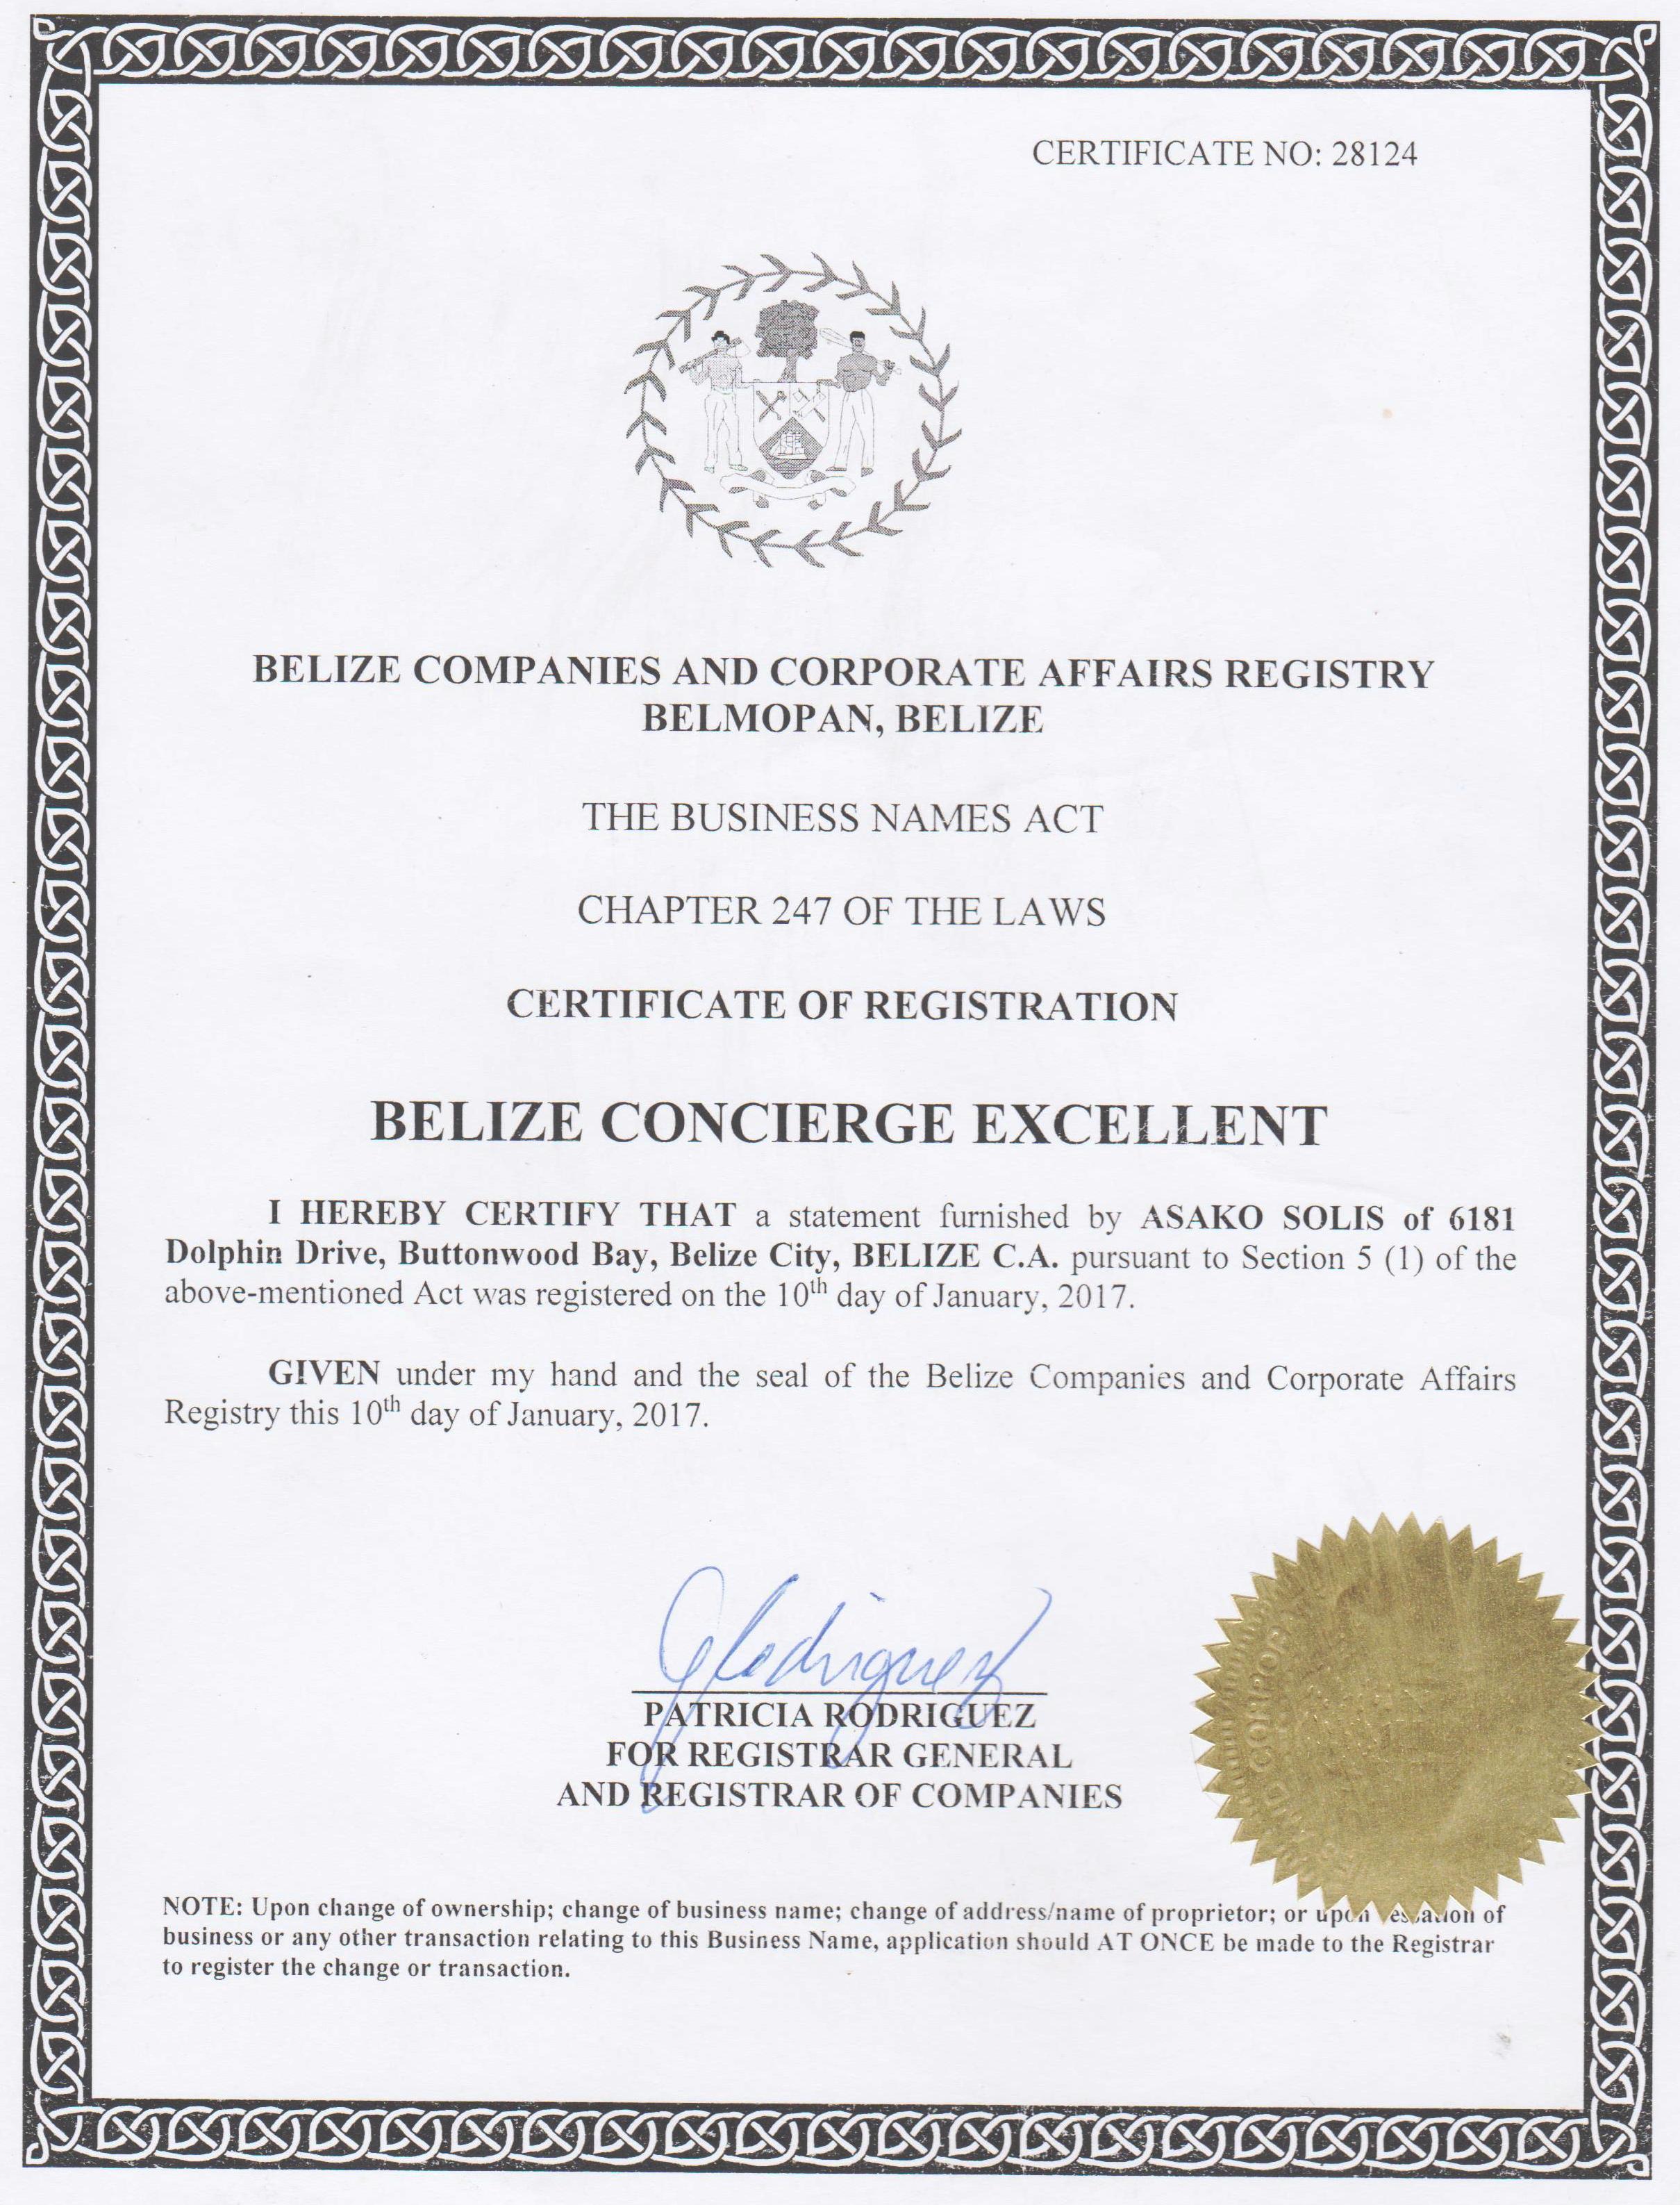 Certificate of Company Registration Belize Concierge Excellent